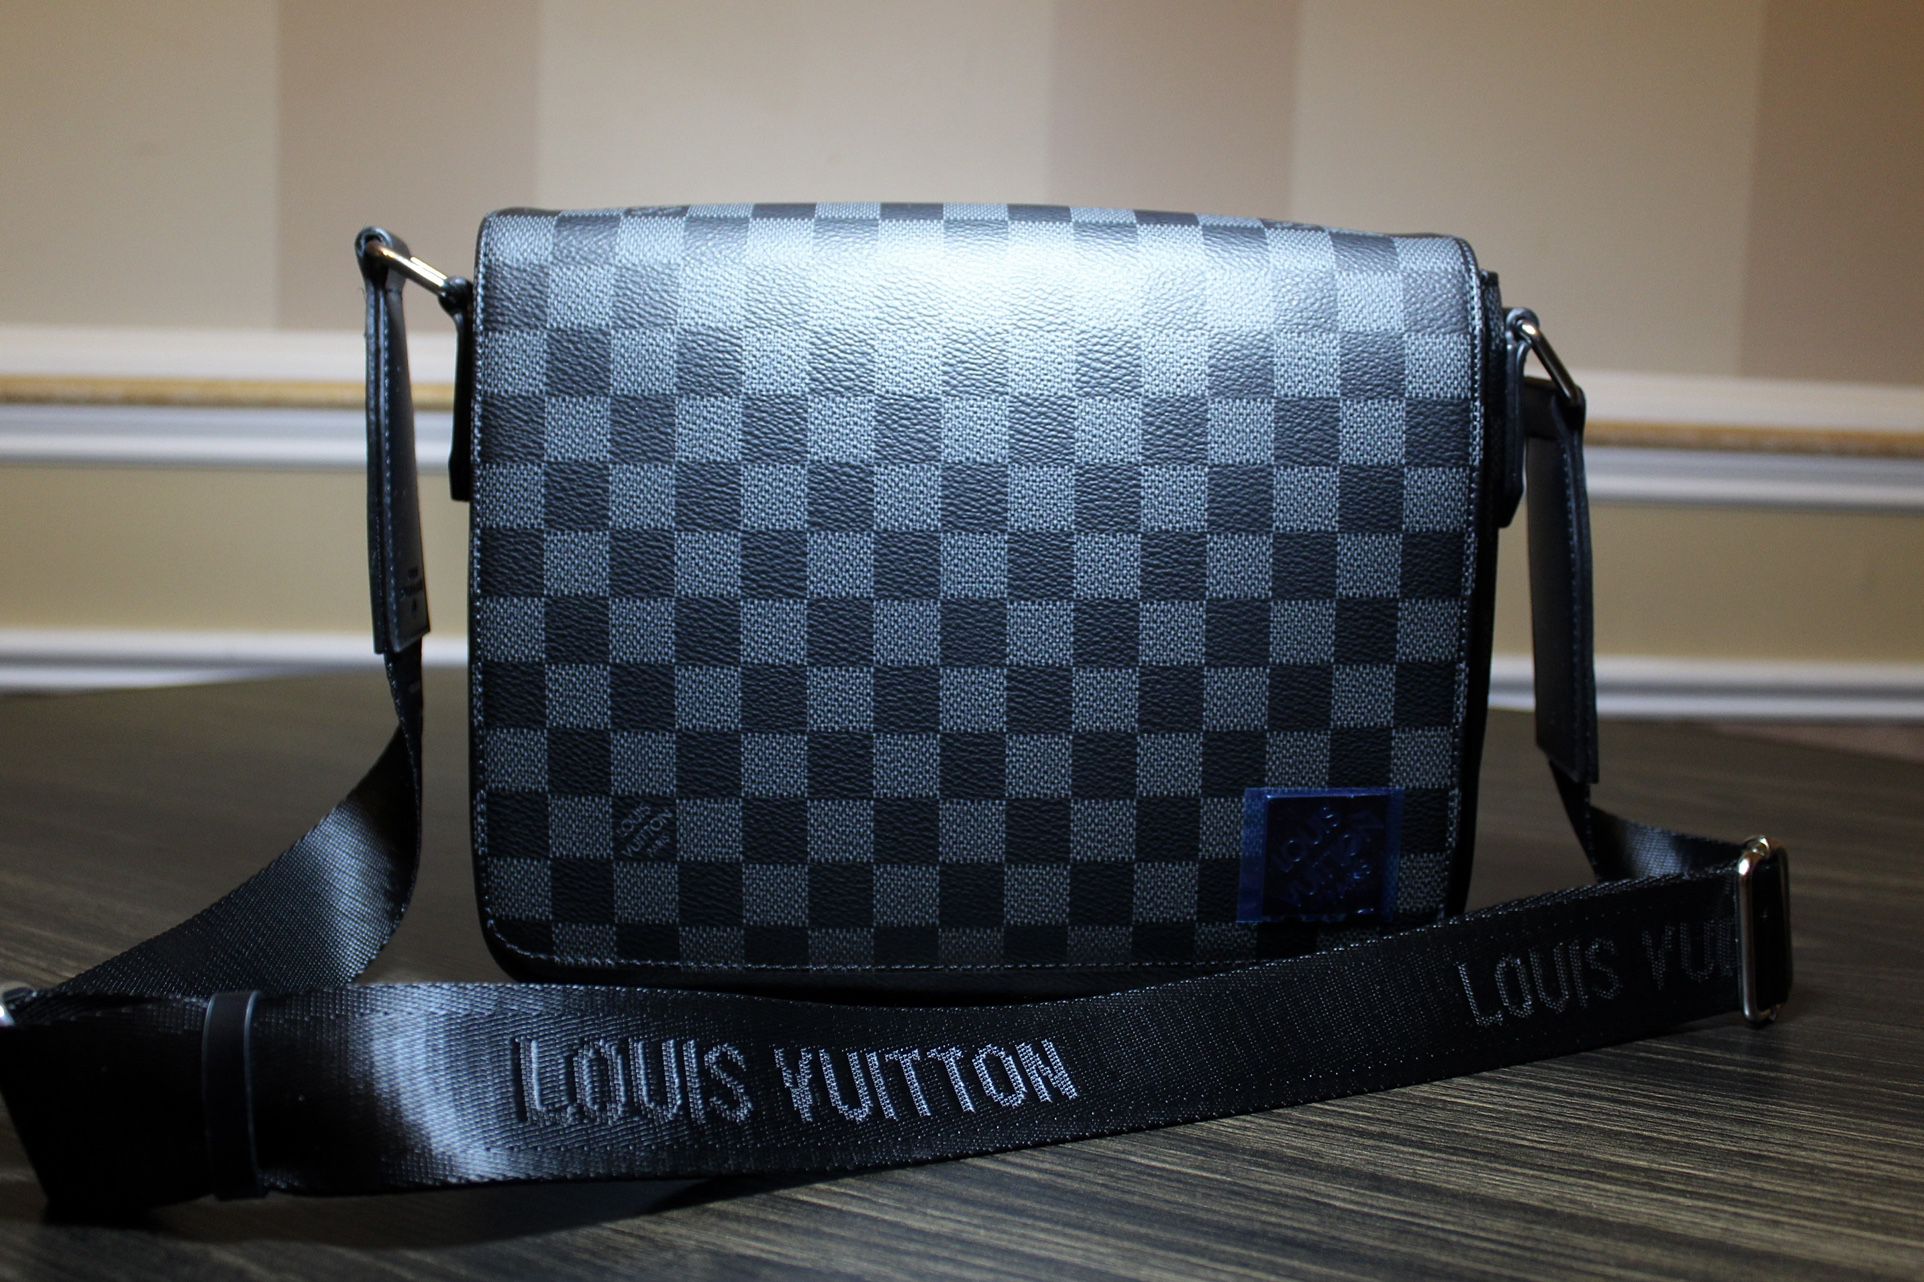 Louie Vuitton Messenger District PM messenger bag